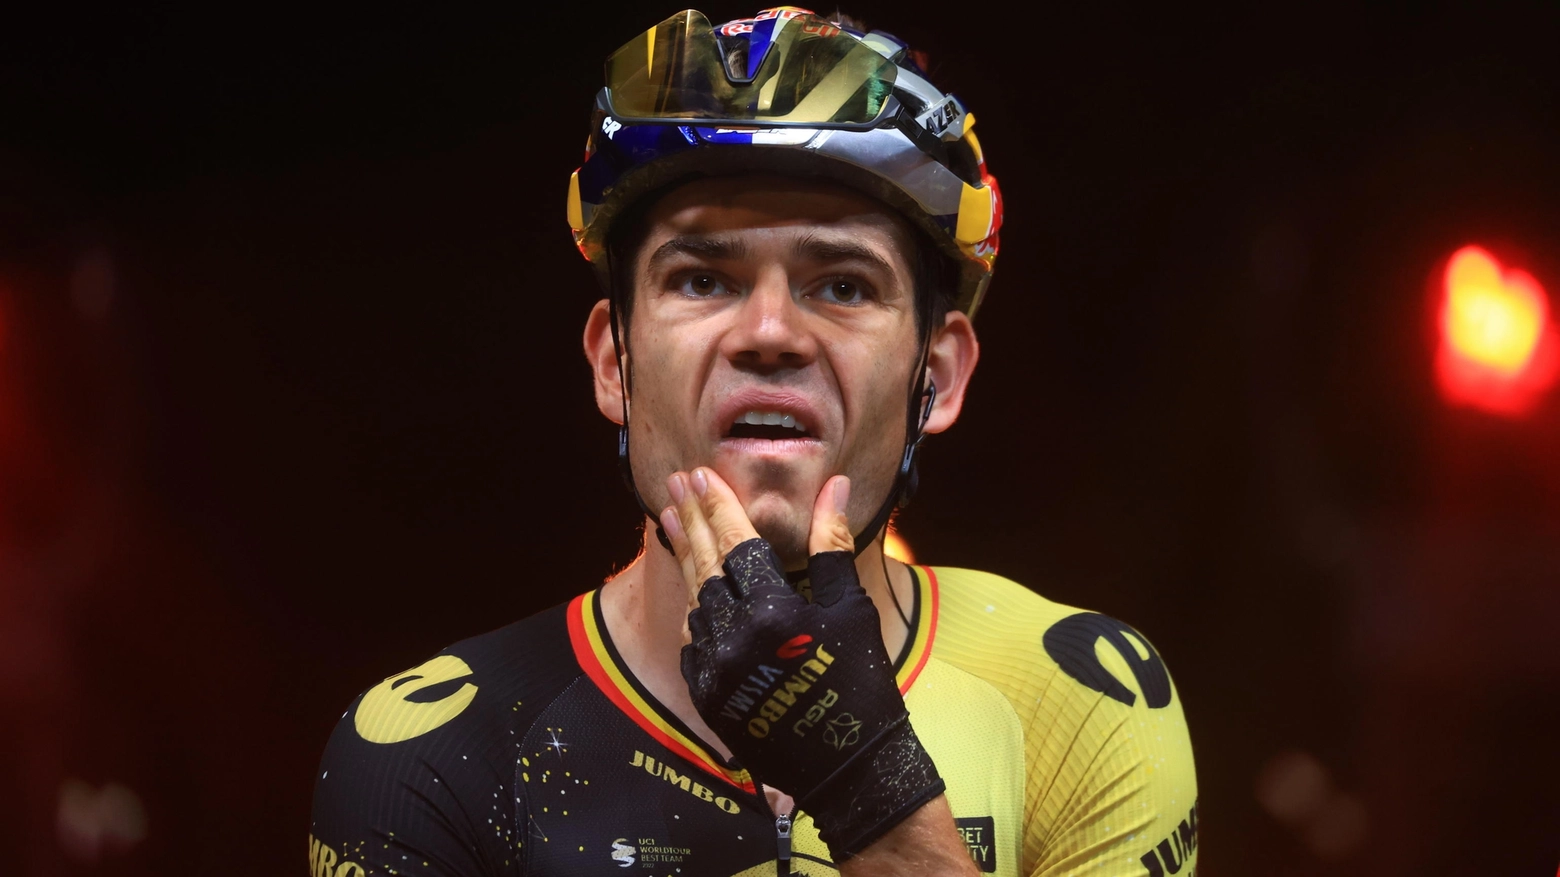 Alla festa dello statunitense fanno da contraltare le lacrime del belga, che rischia di saltare Giro delle Fiandre, Parigi-Roubaix e forse anche il Giro d'Italia